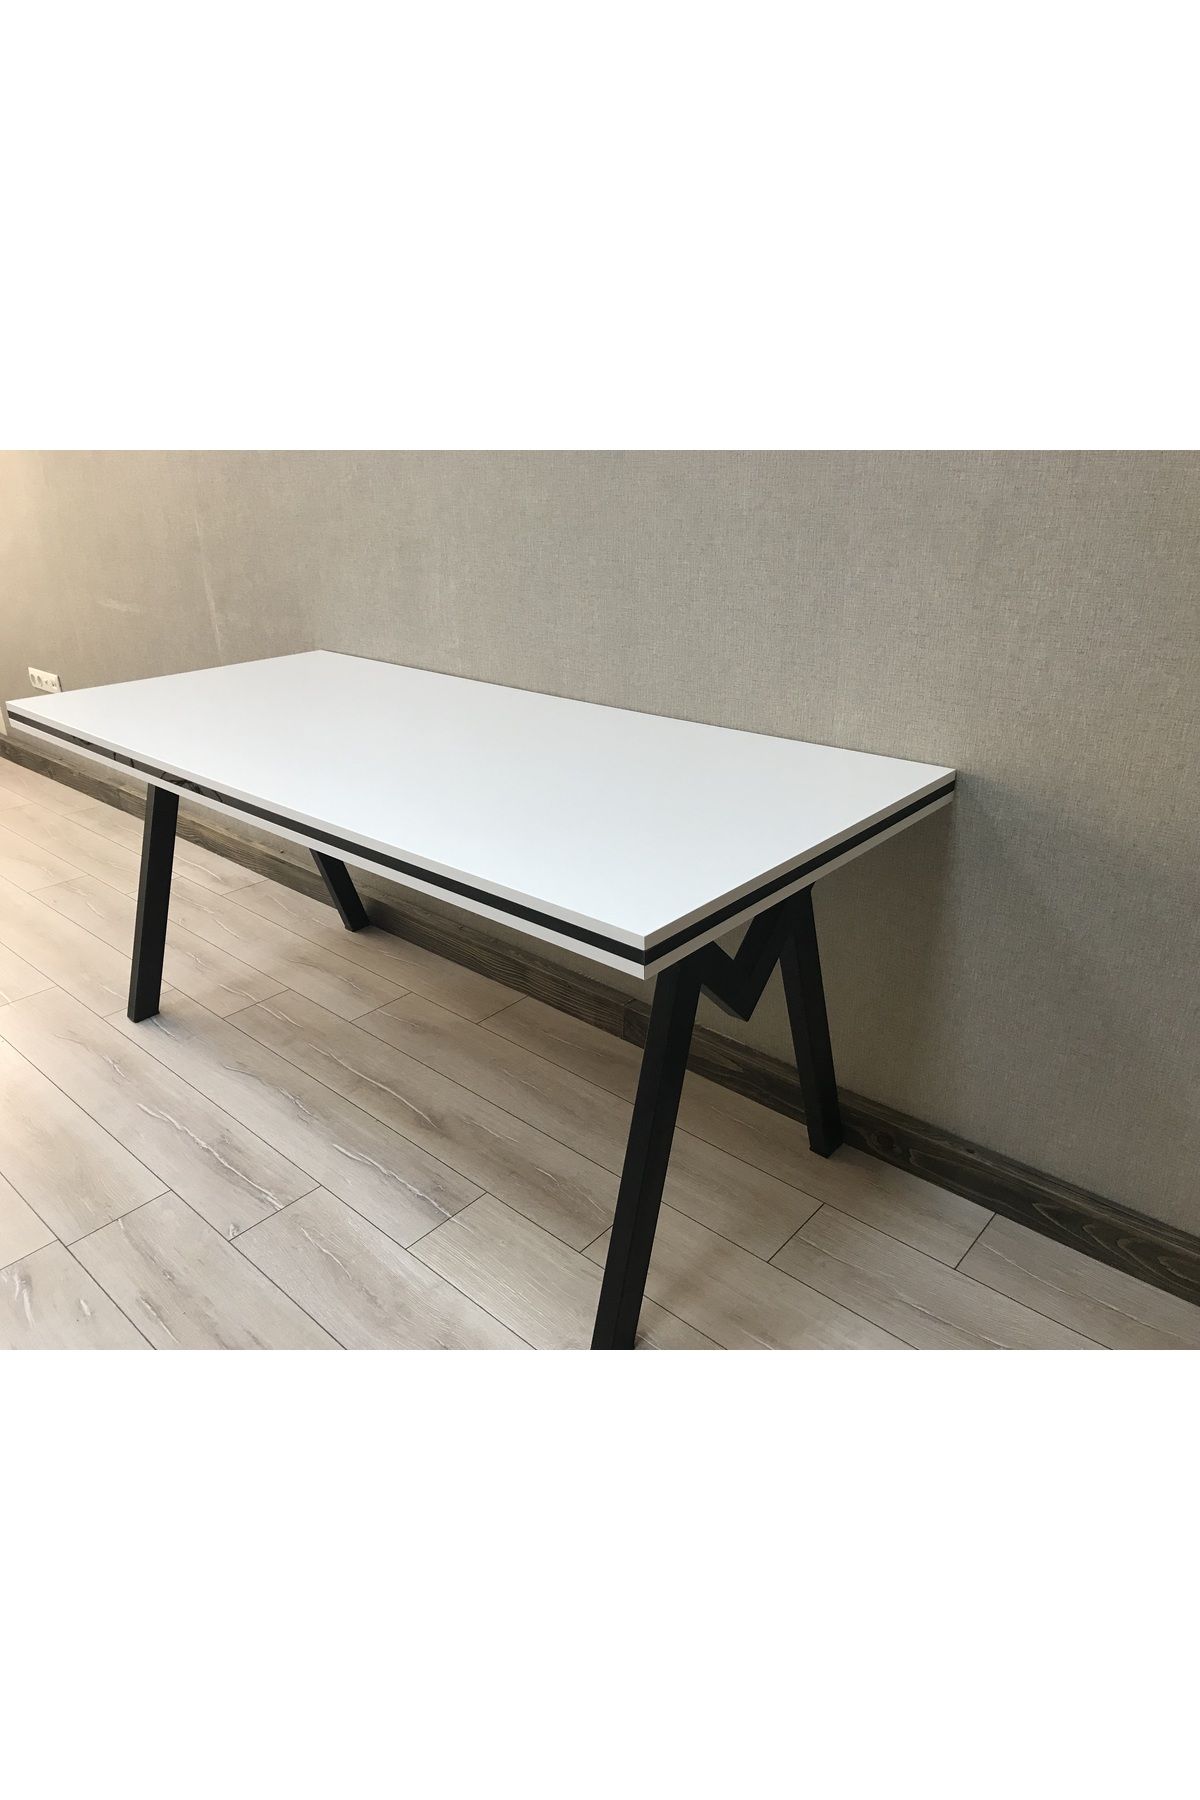 EFA MDF Lam Yemek masası (Demir Ayaklı) 60 x 160 cm (Ayak Modelini Seçebilirsiniz)